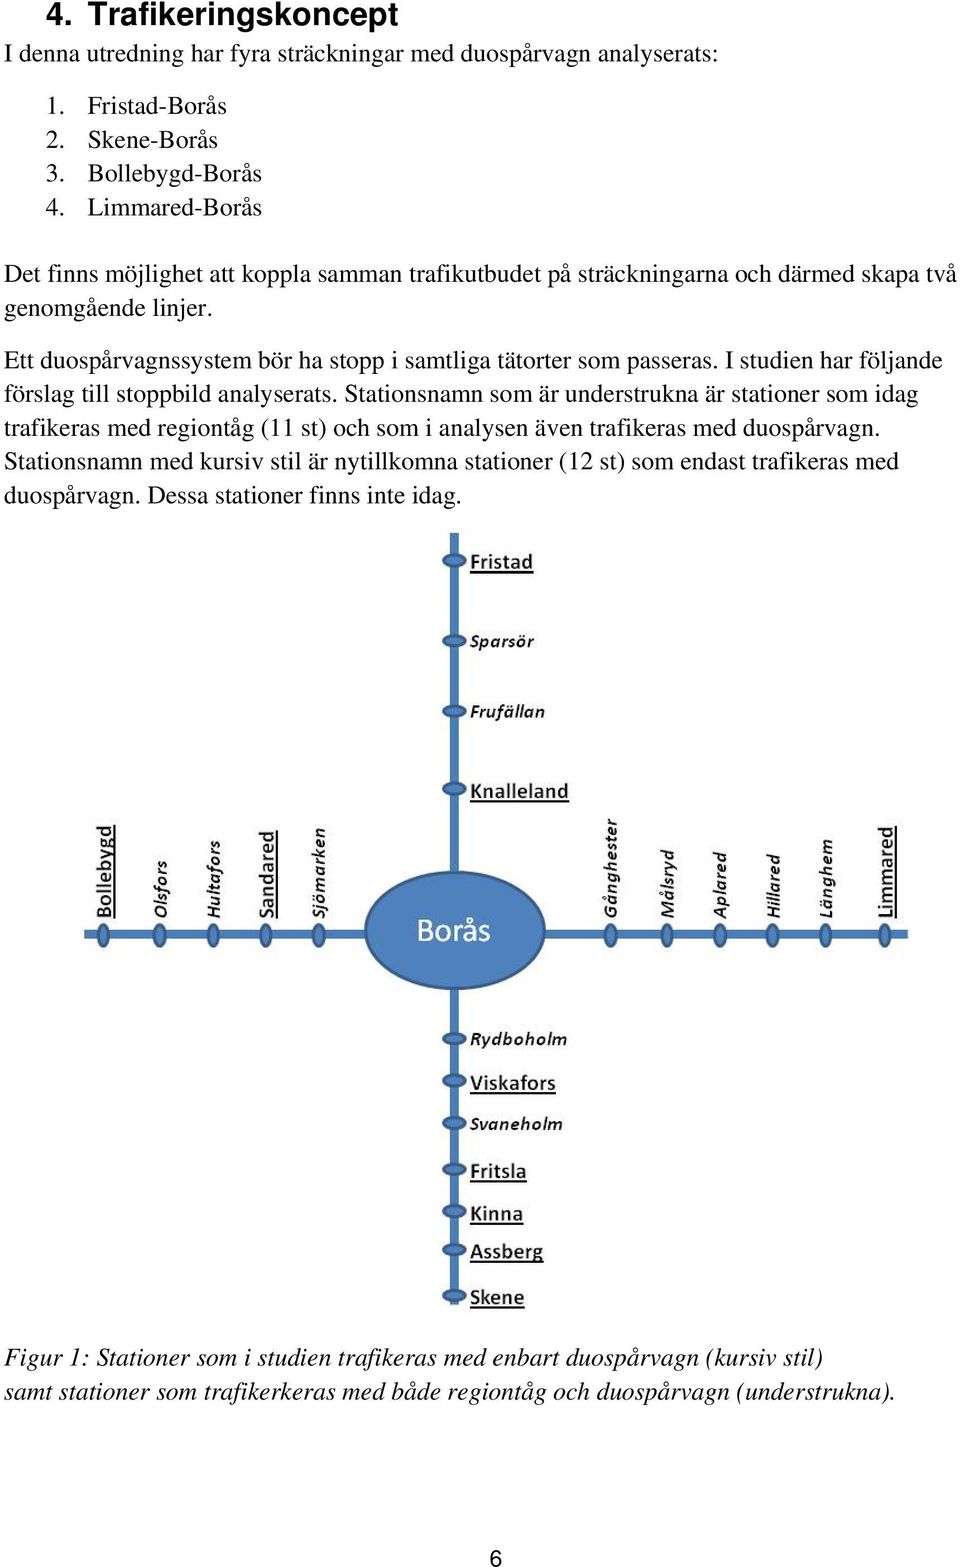 I studien har följande förslag till stoppbild analyserats. Stationsnamn som är understrukna är stationer som idag trafikeras med regiontåg (11 st) och som i analysen även trafikeras med duospårvagn.